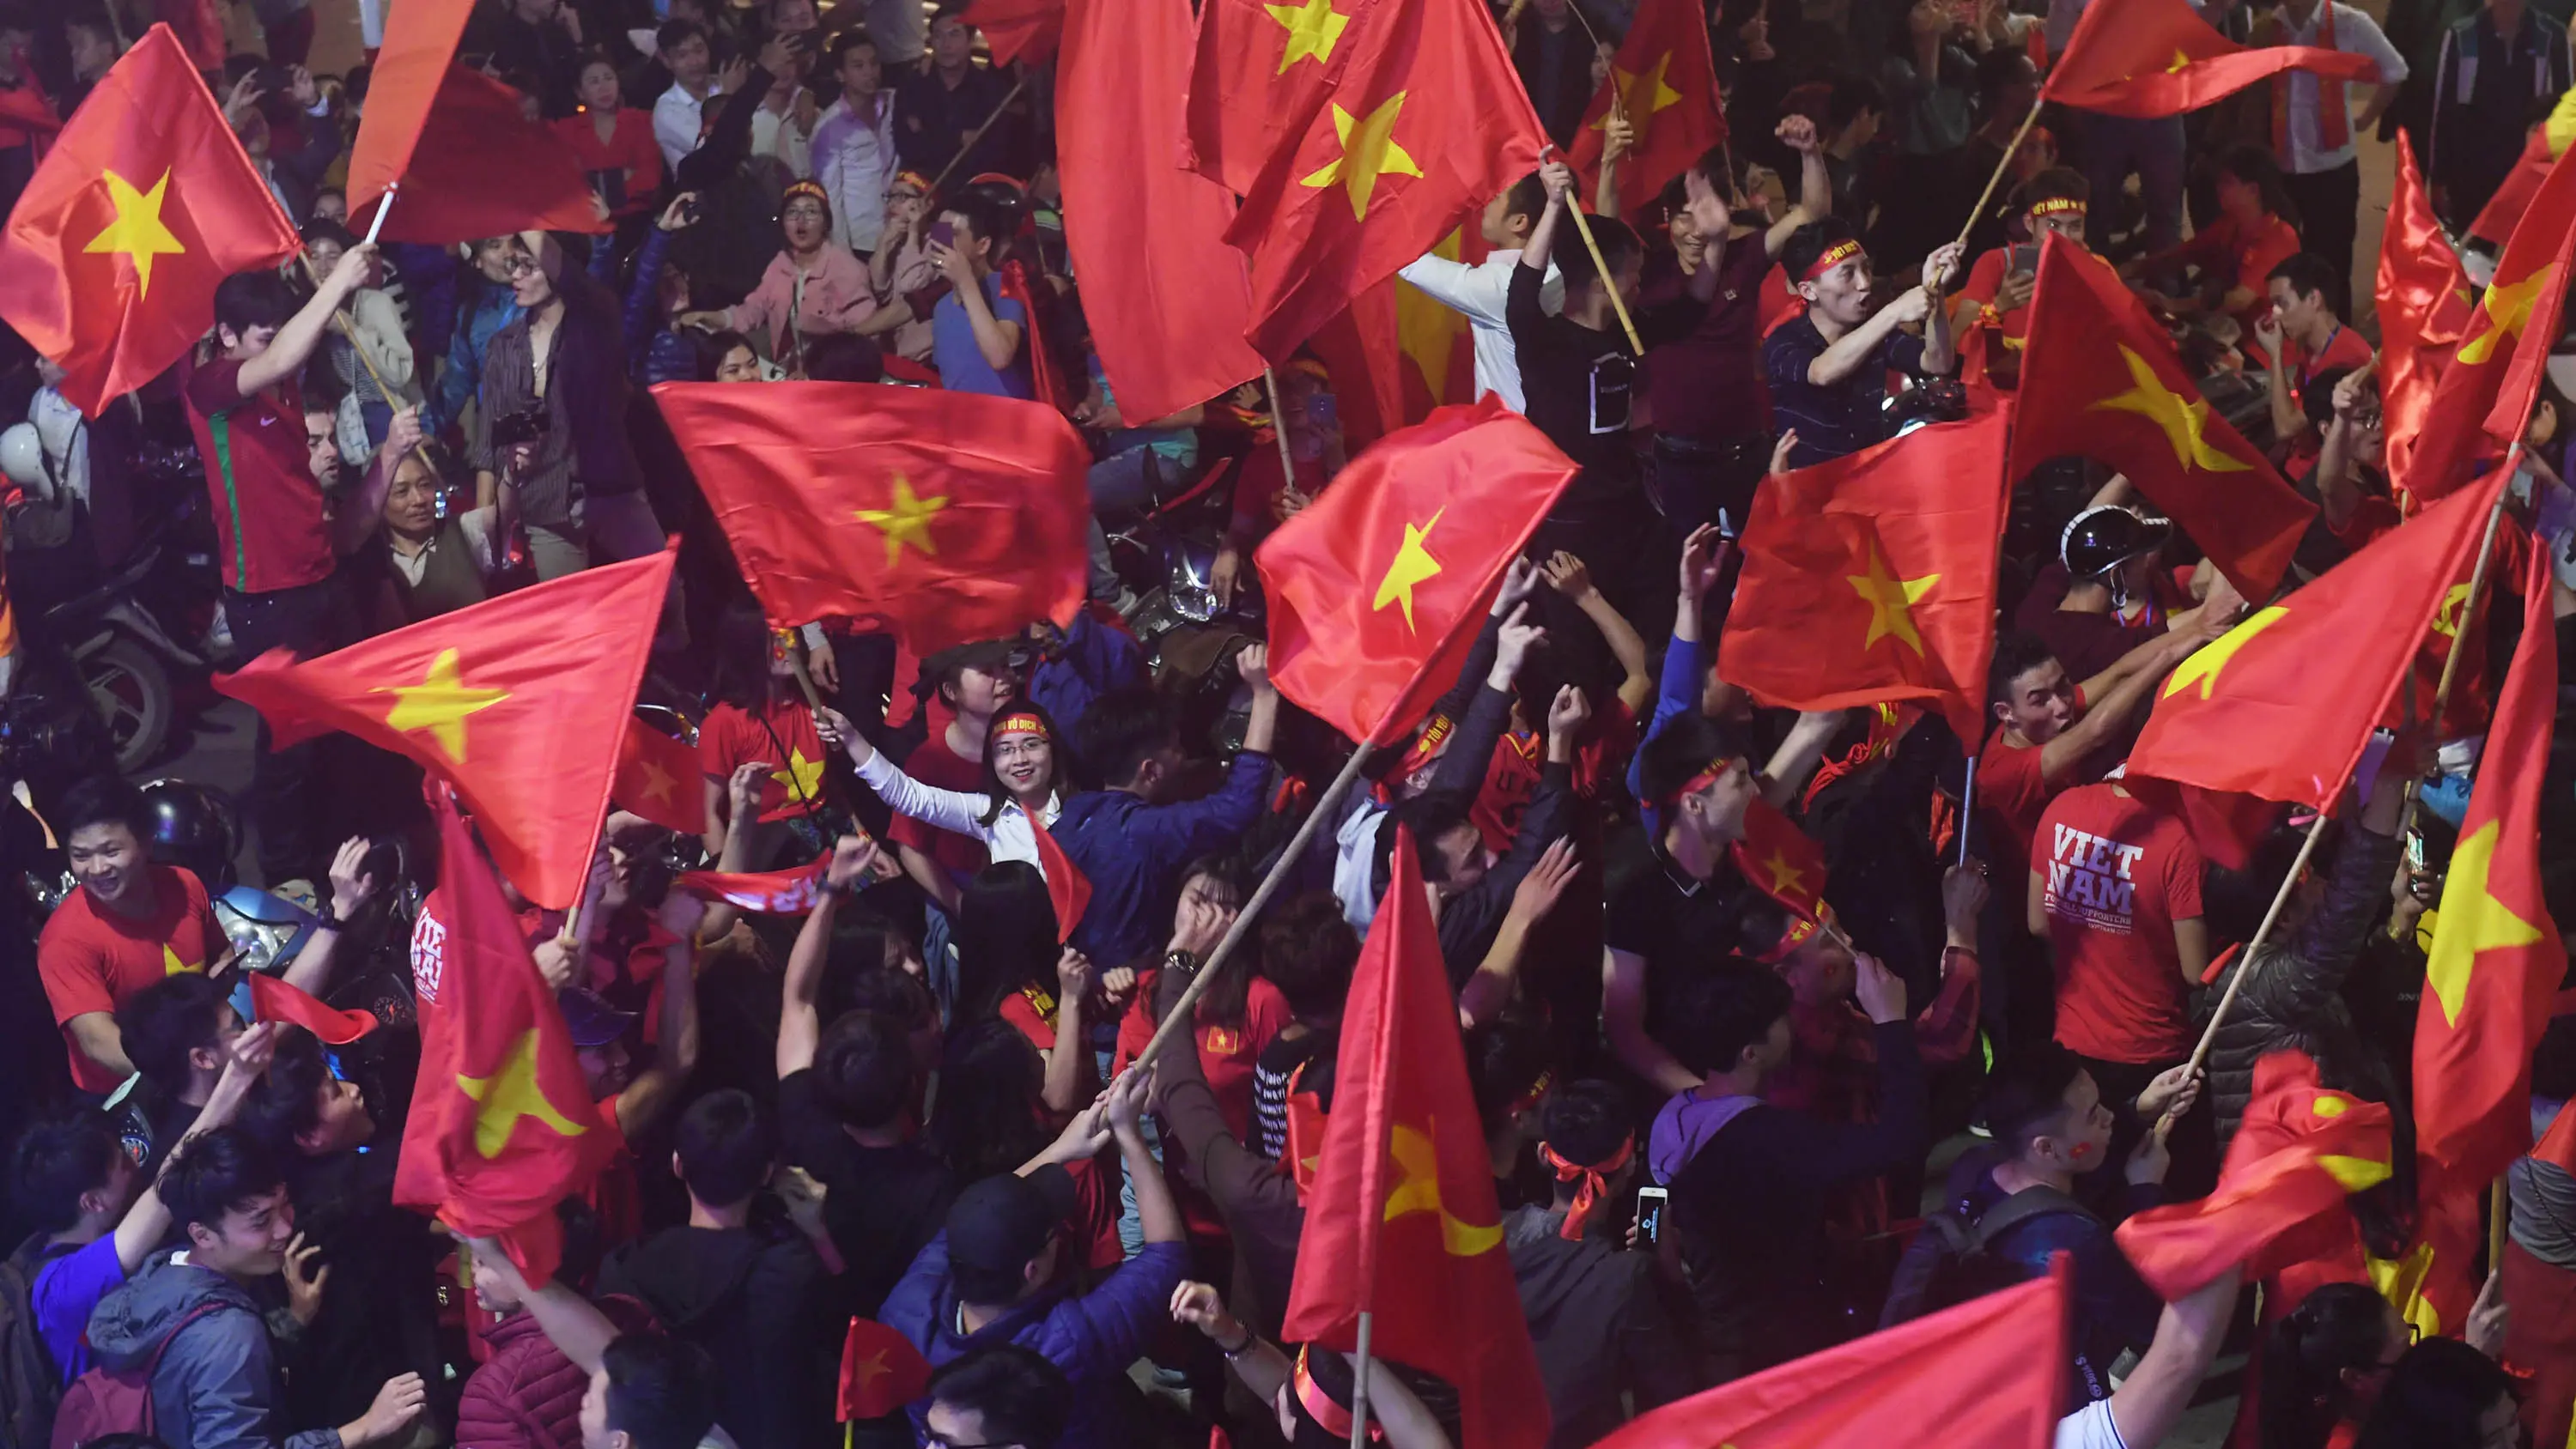 Sejumlah warga konvoi merayakan keberhasilan Vietnam mengalahkan Qatar pada semifinal Piala AFC U-23 di Hanoi, Rabu (23/1/2018). Vietnam berhasil lolos ke final untuk menantang pemenang antara Uzbekistan dan Korea Selatan. (AFP/Hoang Dinh Nam)